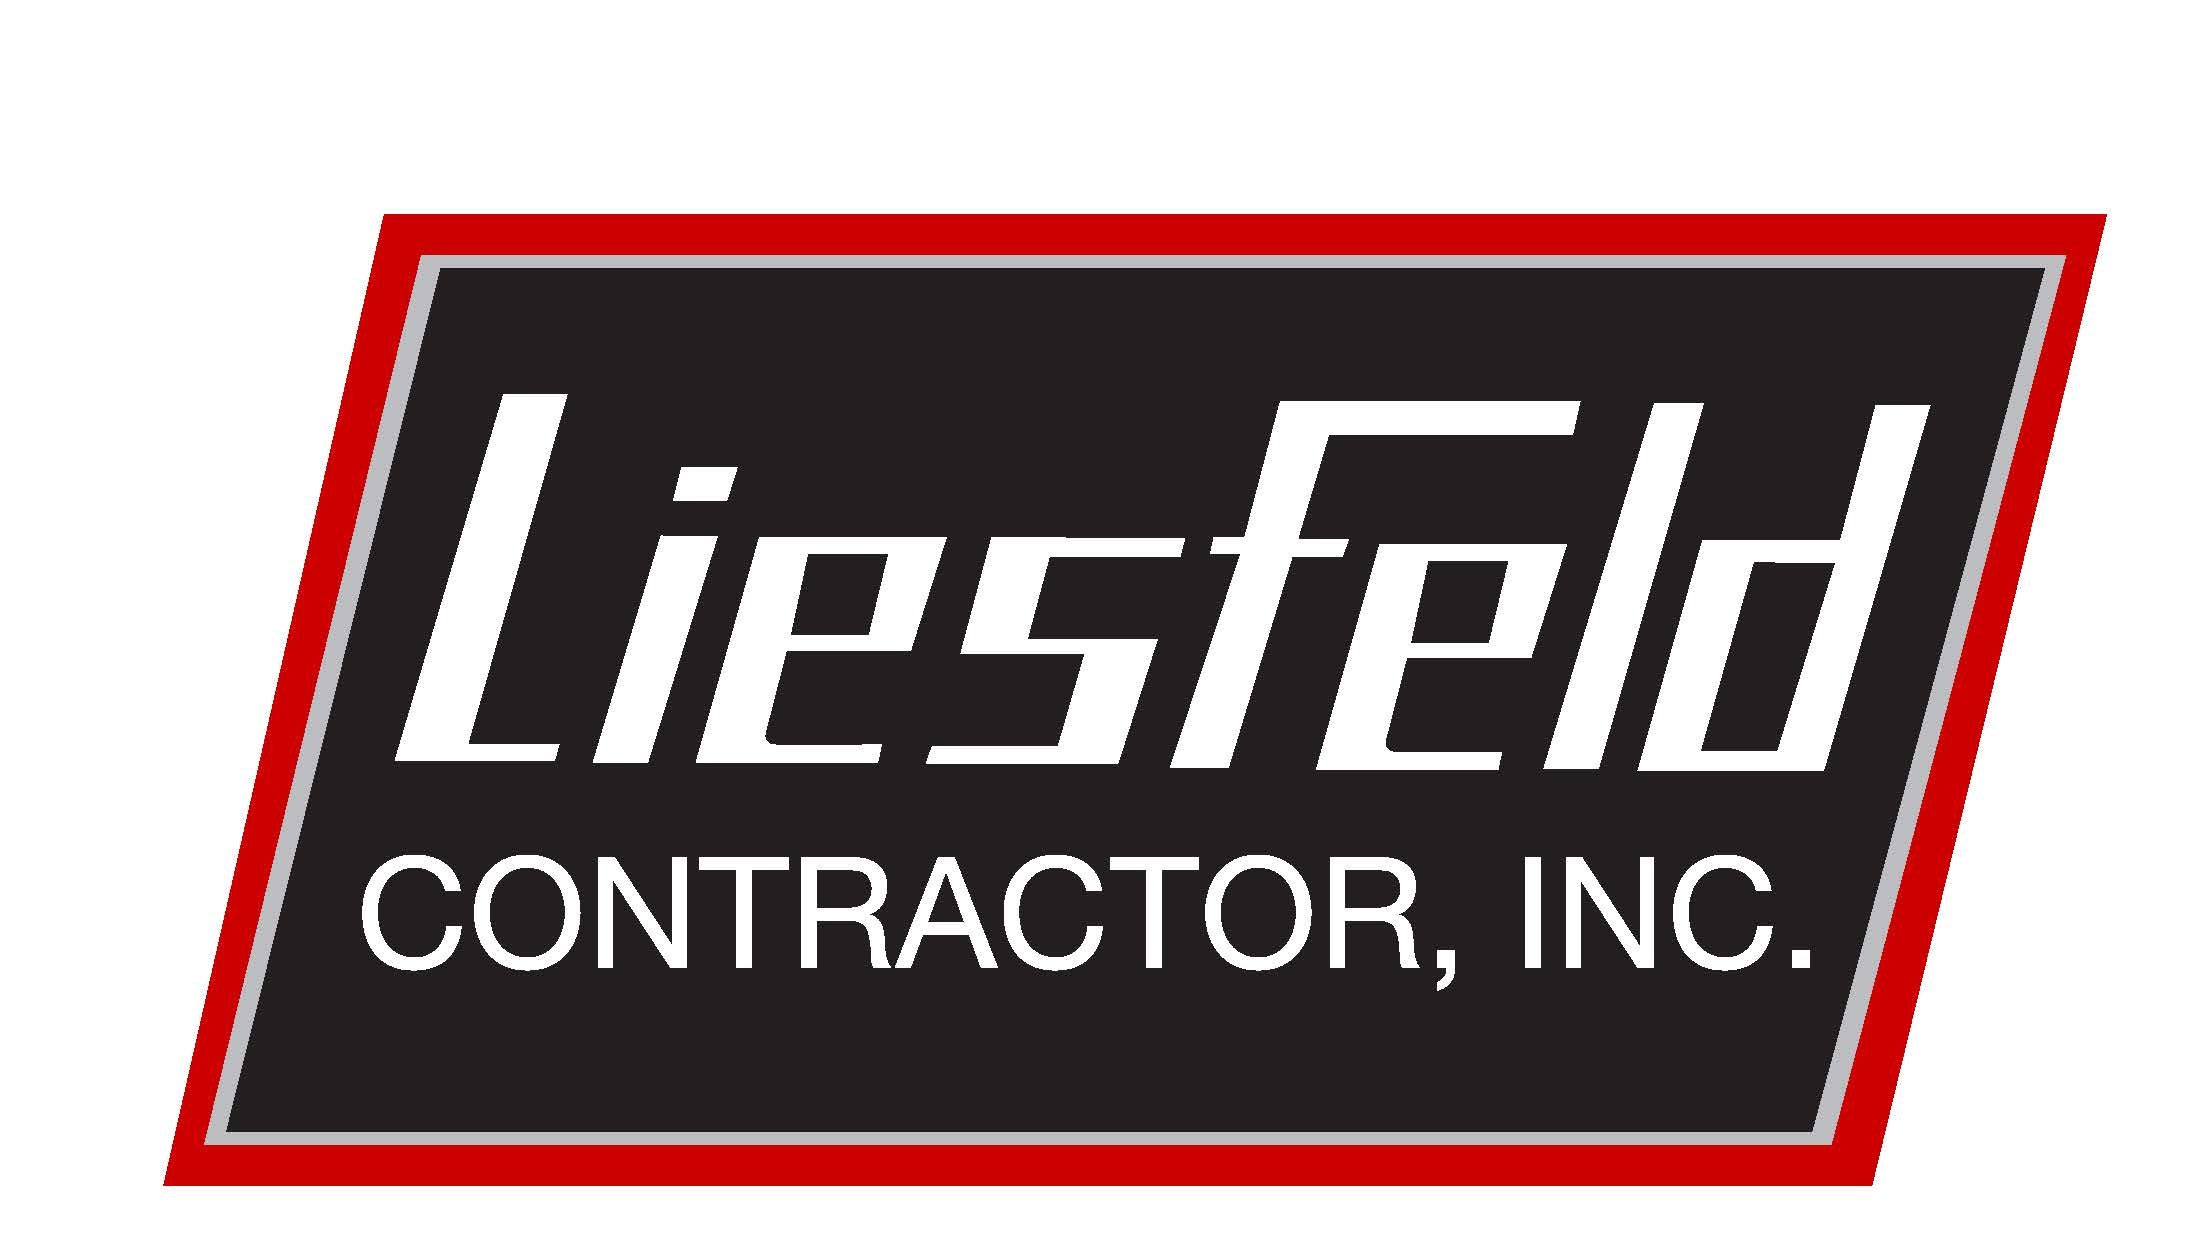 Liesfeld Contractor, Inc.